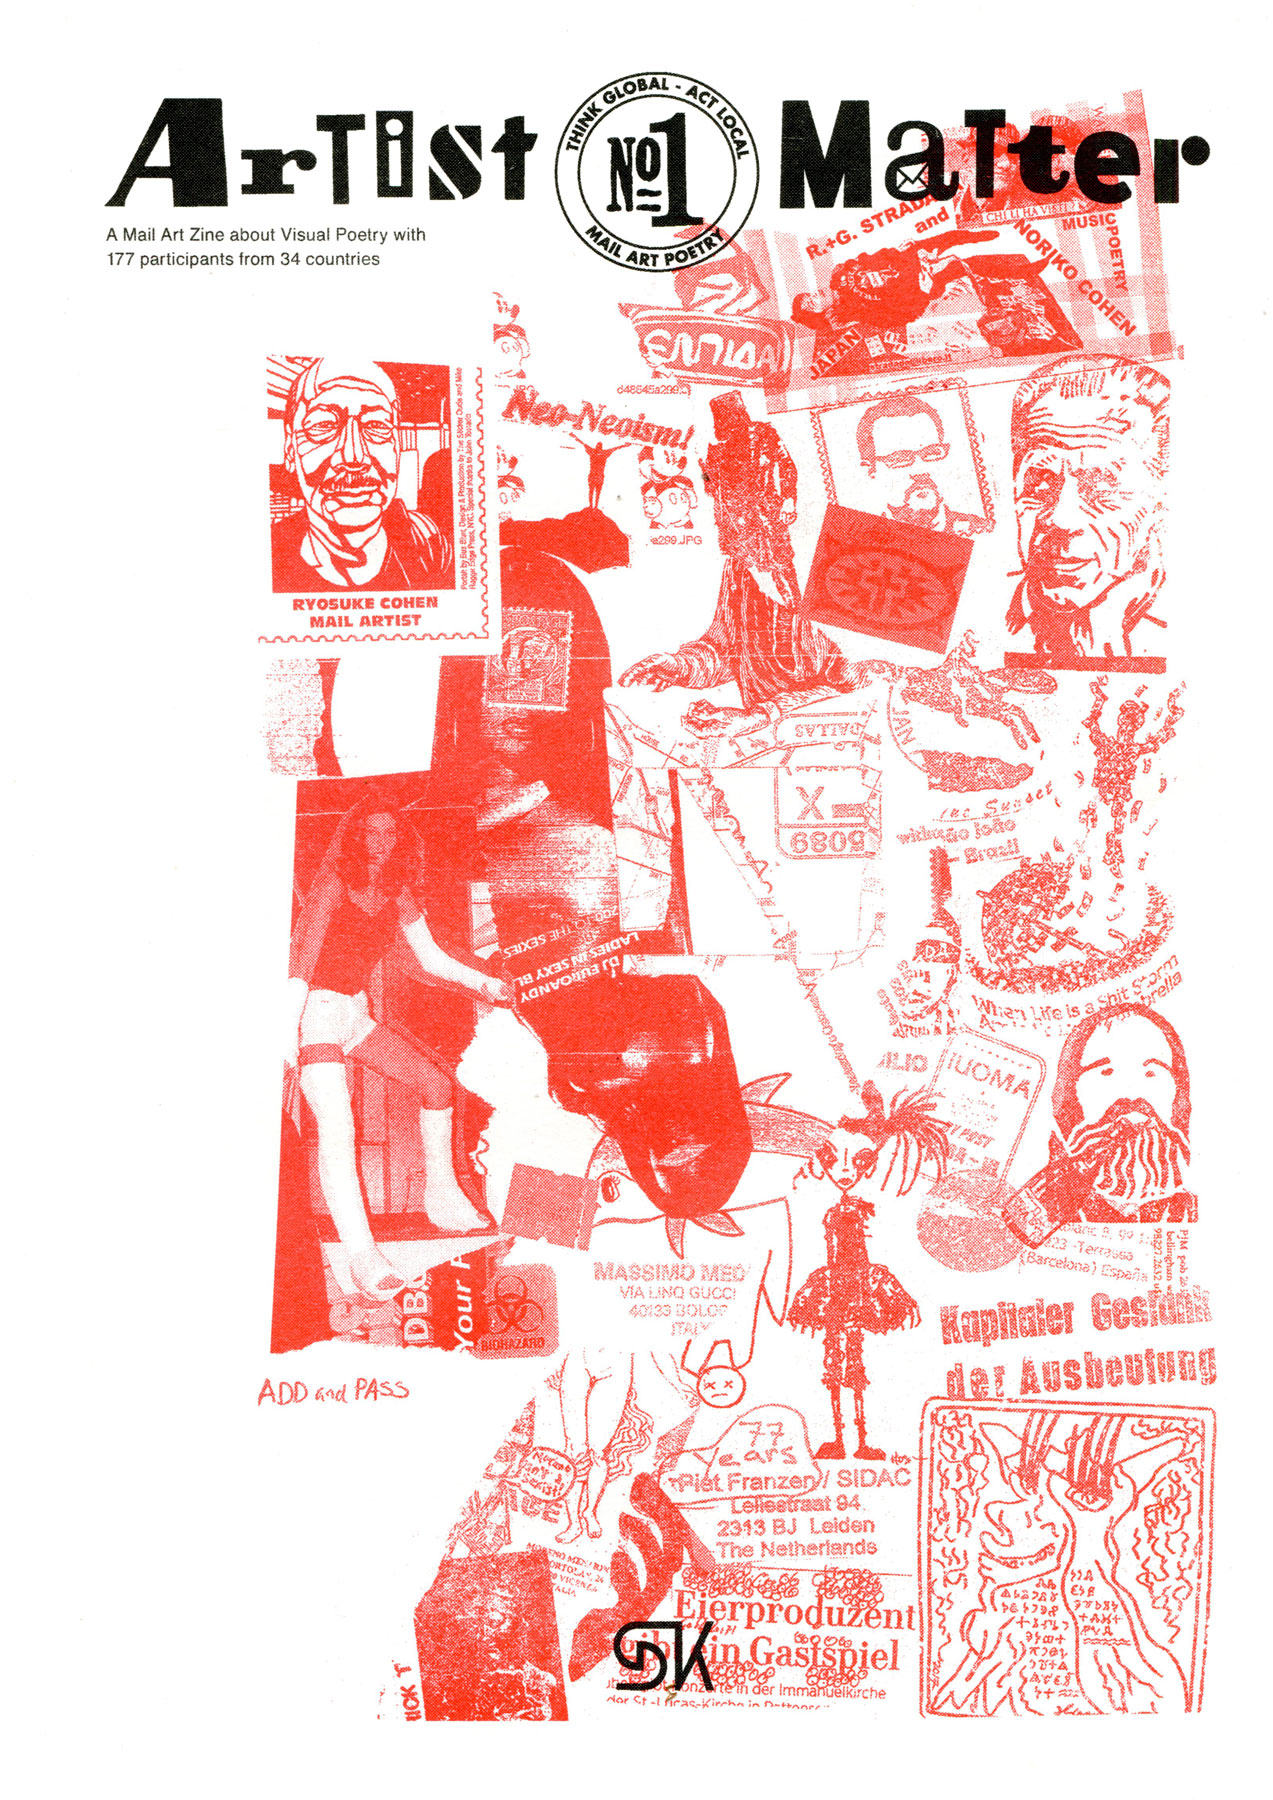 Nella foto un collage, su sfondo bianco e filtro rosso, di timbri postali di diversi paesi, francobolli, entrambi segni della mail art, una fotografia di una donna con gambe braccia ingessate.